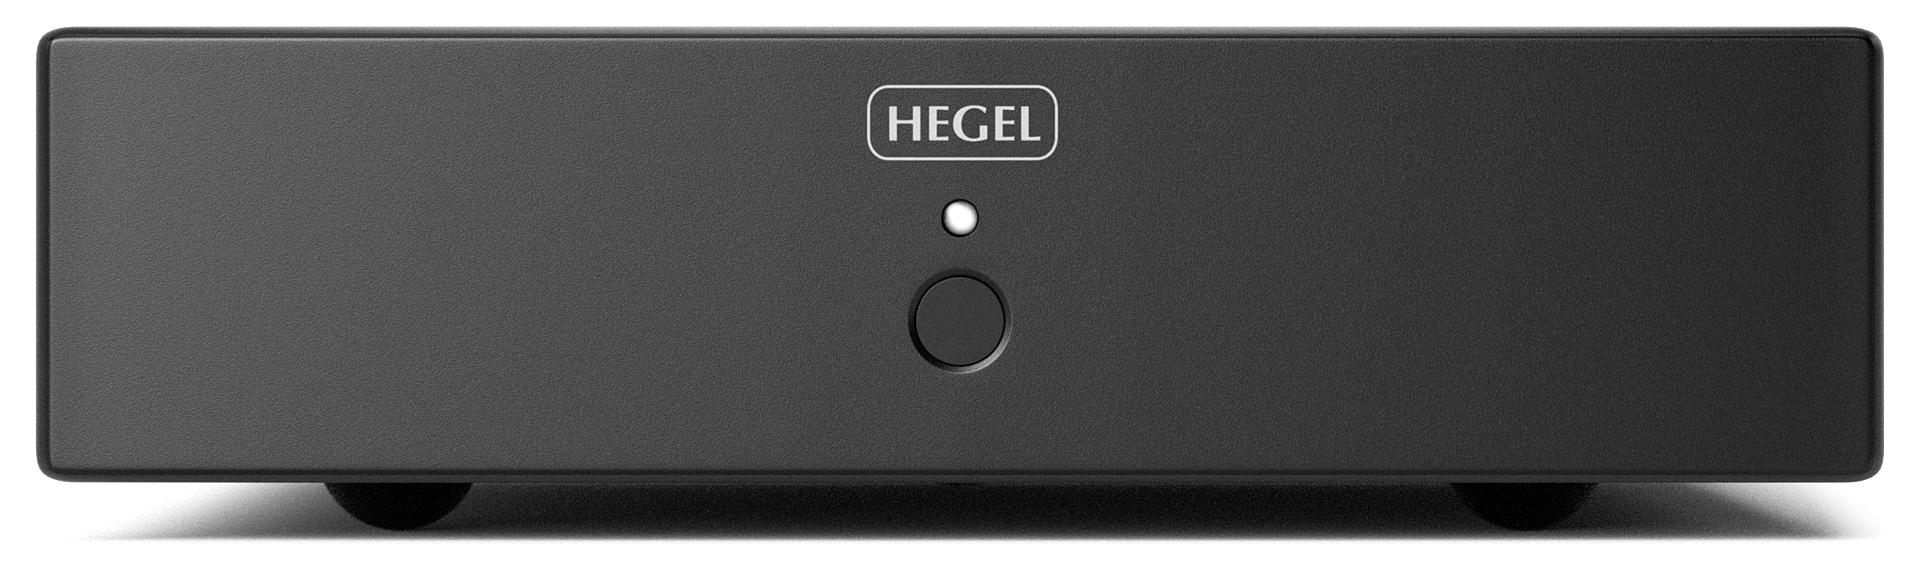 HEGEL V10 - Préamplificateur phono neutre, son dynamique et révélateur